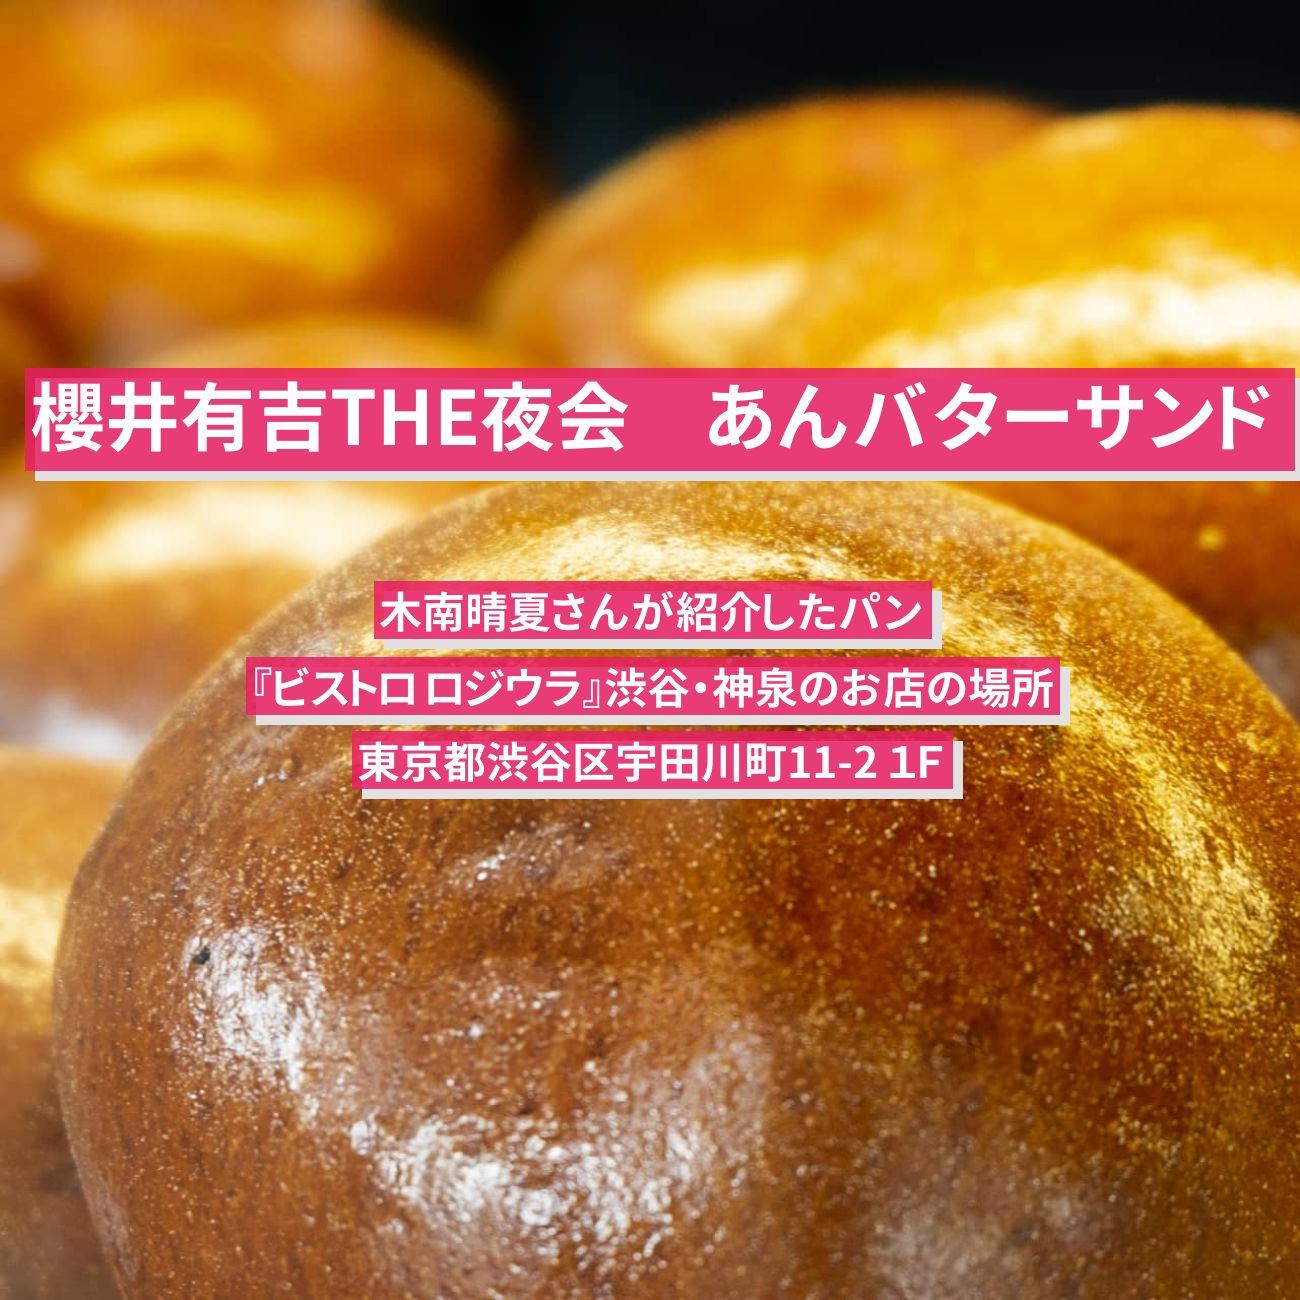 【櫻井有吉THE夜会】あんバターサンド　木南晴夏さんが紹介したパン『ビストロ ロジウラ』渋谷・神泉のお店の場所